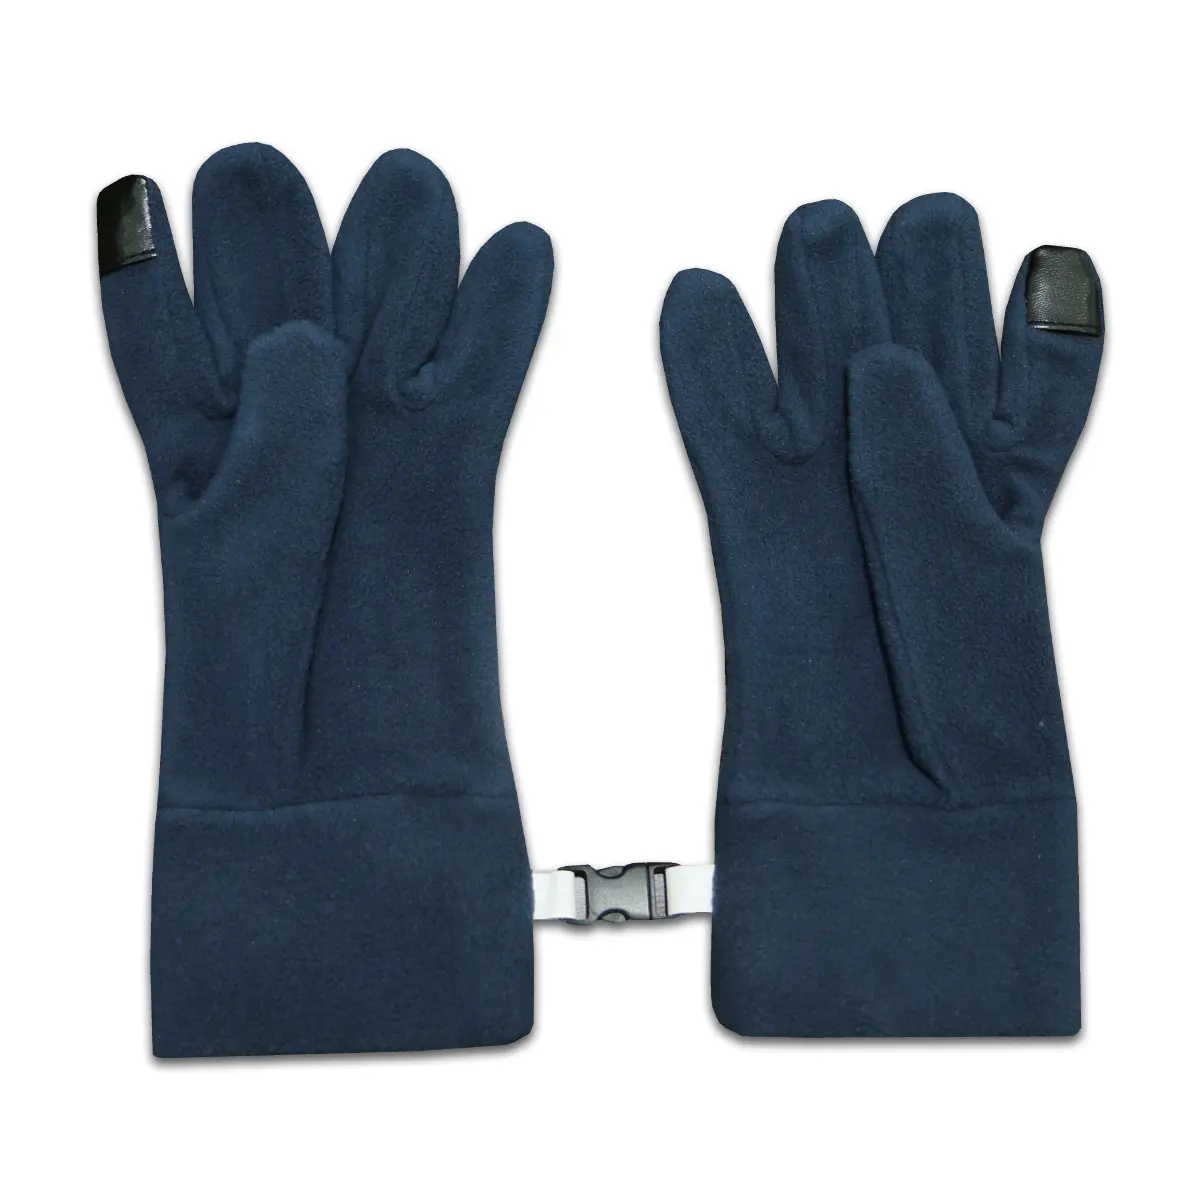 ถุงมือหนังโพลีเอสเตอร์บริสุทธิ์จากปากีสถานถุงมือโพลีเอสเตอร์สีดำตรวจสอบความปลอดภัยถักแบบไร้ตะเข็บ